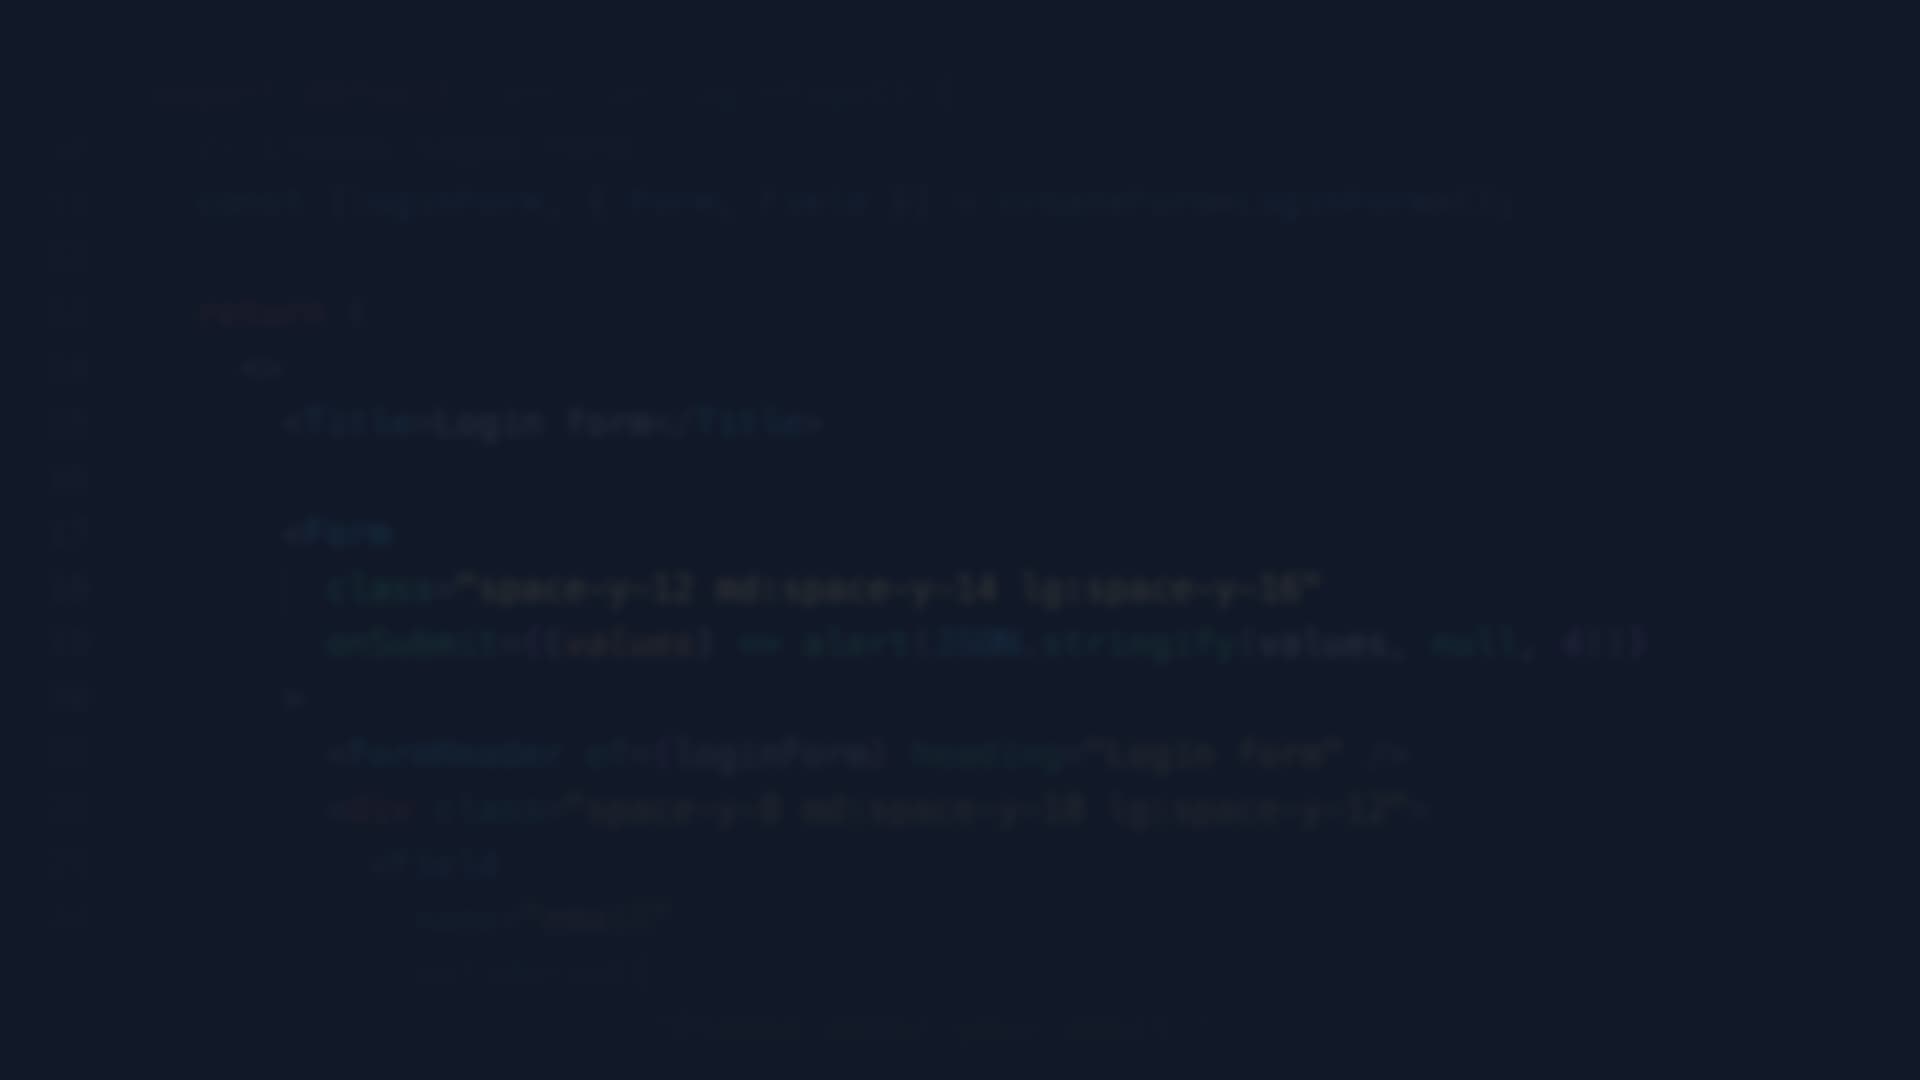 Blurred TypeScript JSX code